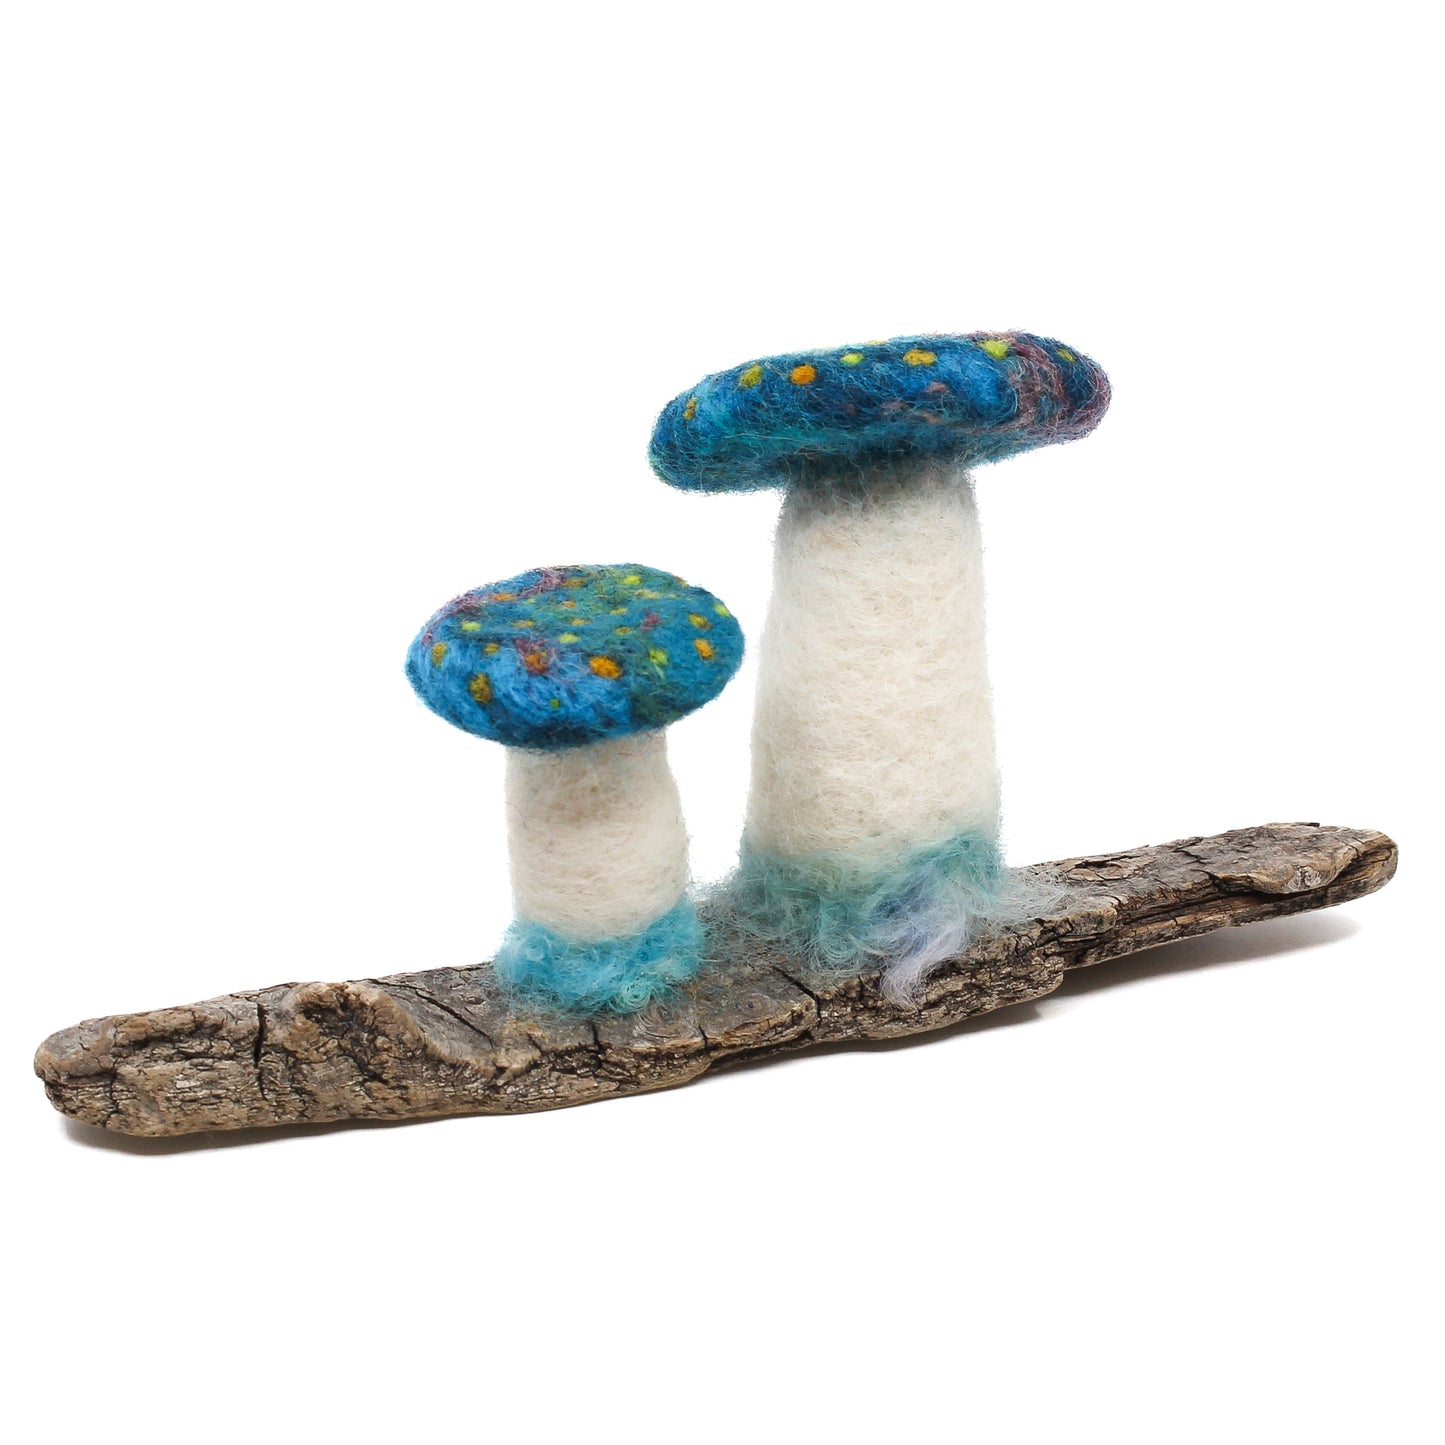 Teal mushrooms on driftwood